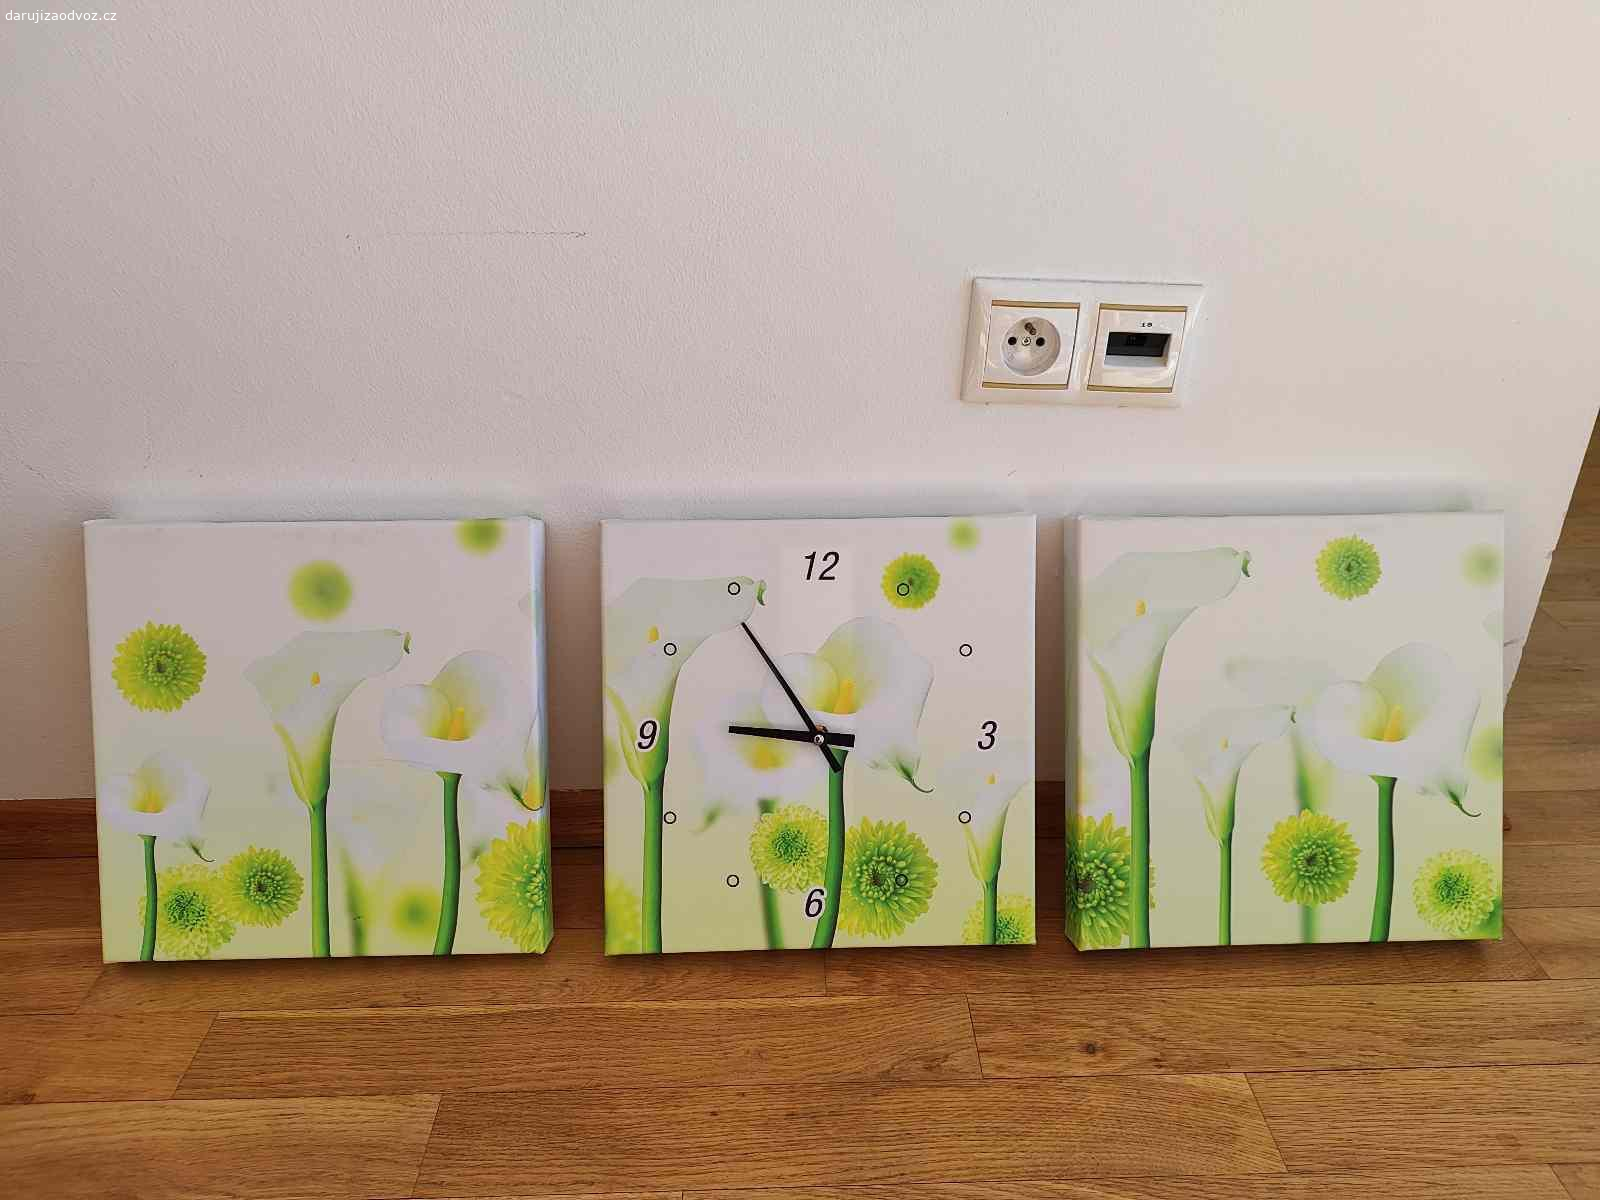 Daruji dekorativní sadu na zeď s hodinami. Jsou to tři stejné obrazce, jeden s hodinami. 
Jeden díl má 30 x 30 cm.